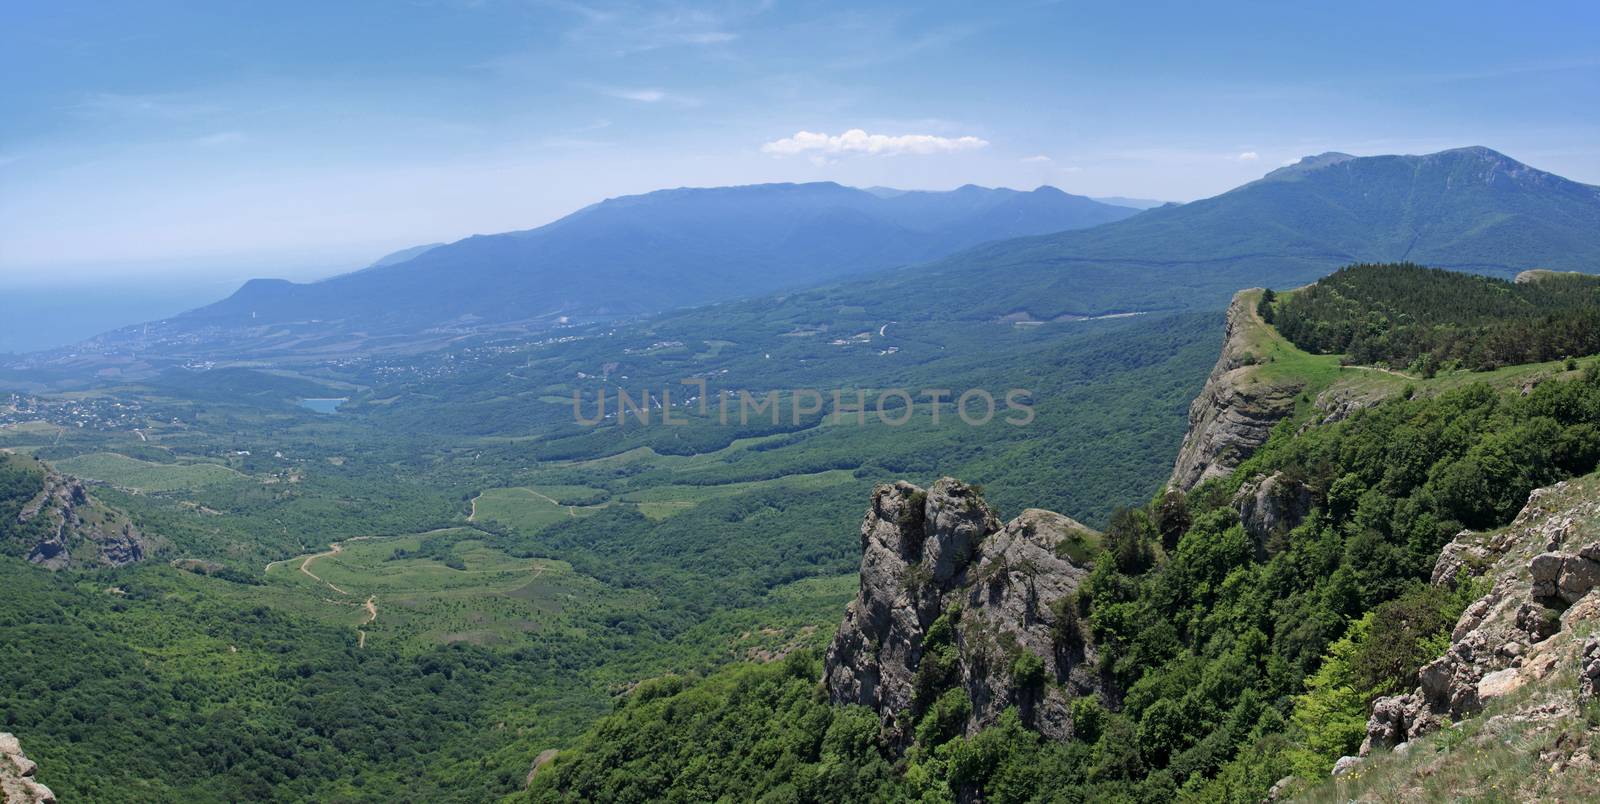 Mount Demerdzhi in the Crimea by fogen